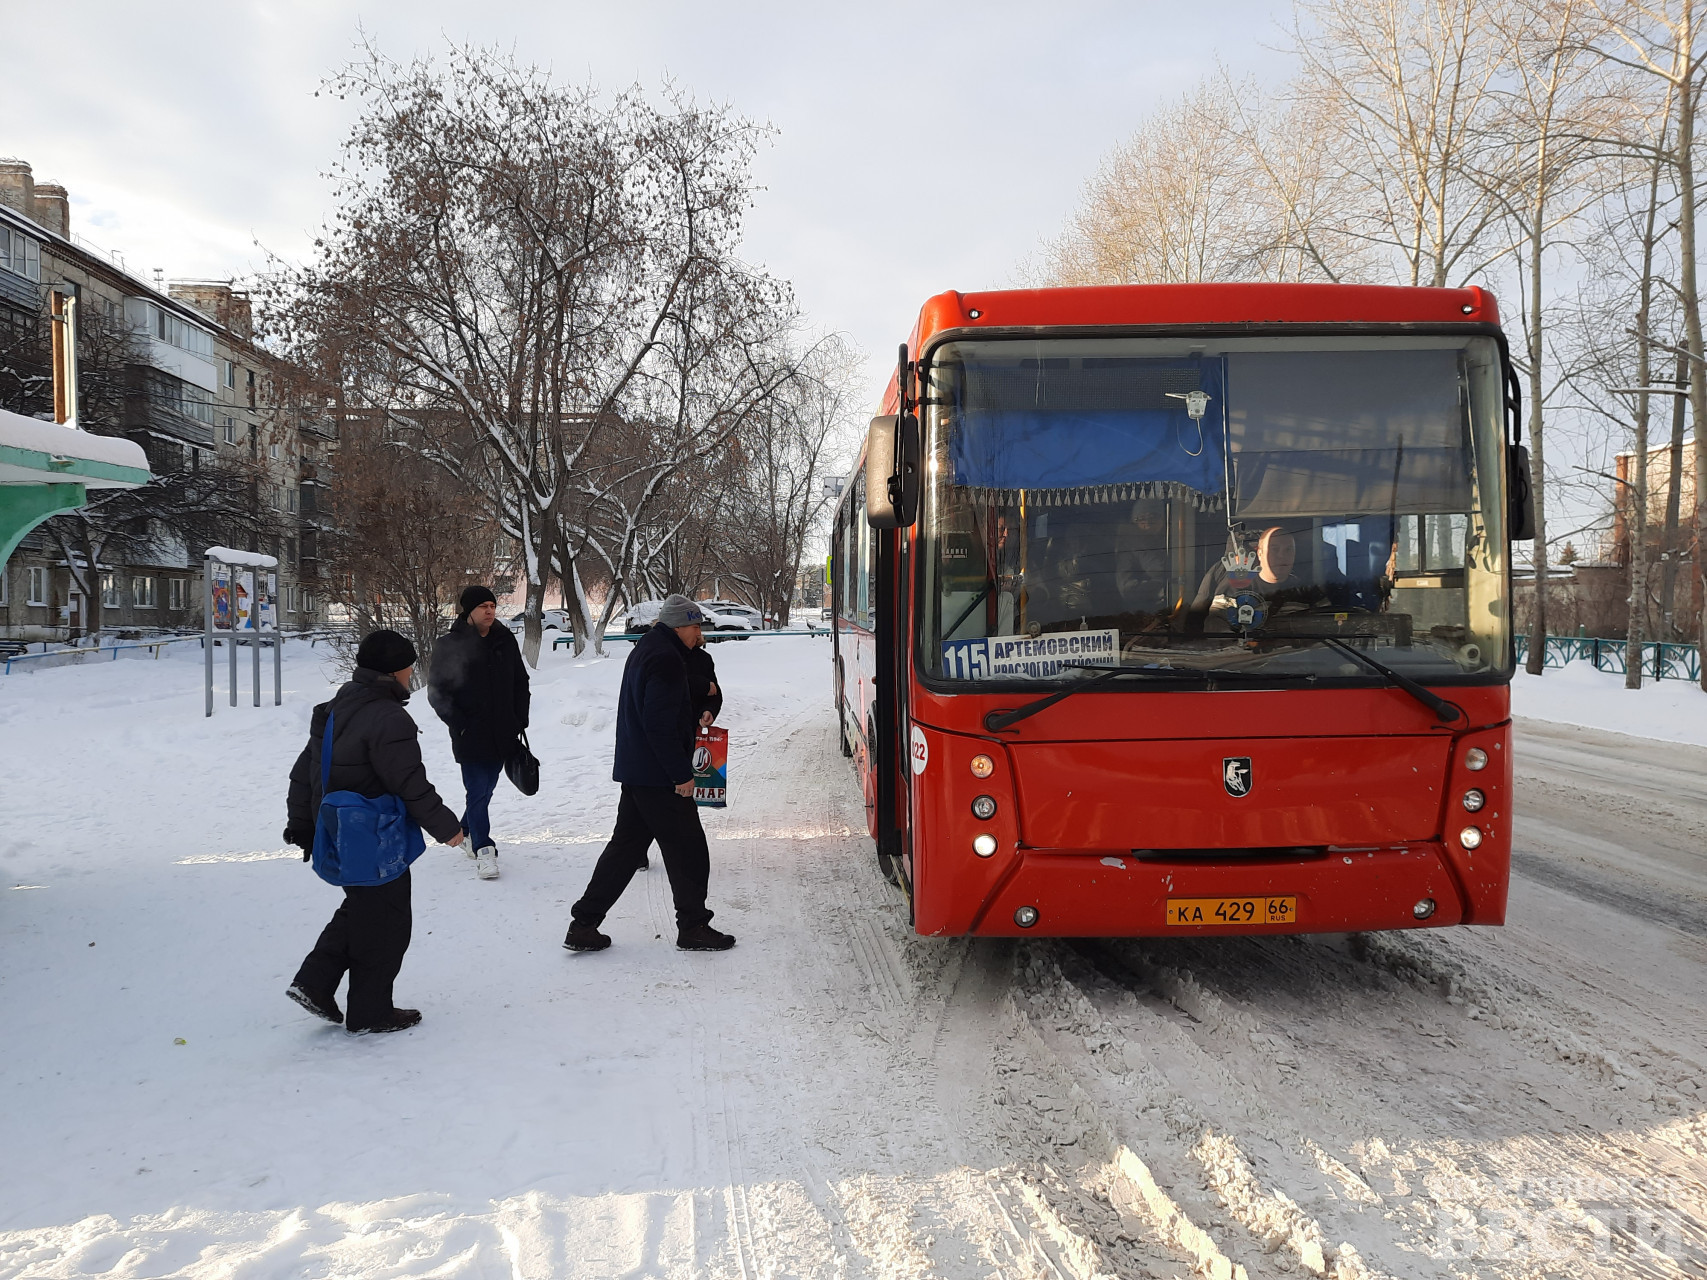 Ожидание автобуса дольше не стало, холод выездам не помеха, сообщают водители. Фото: Михаил Дудин, 